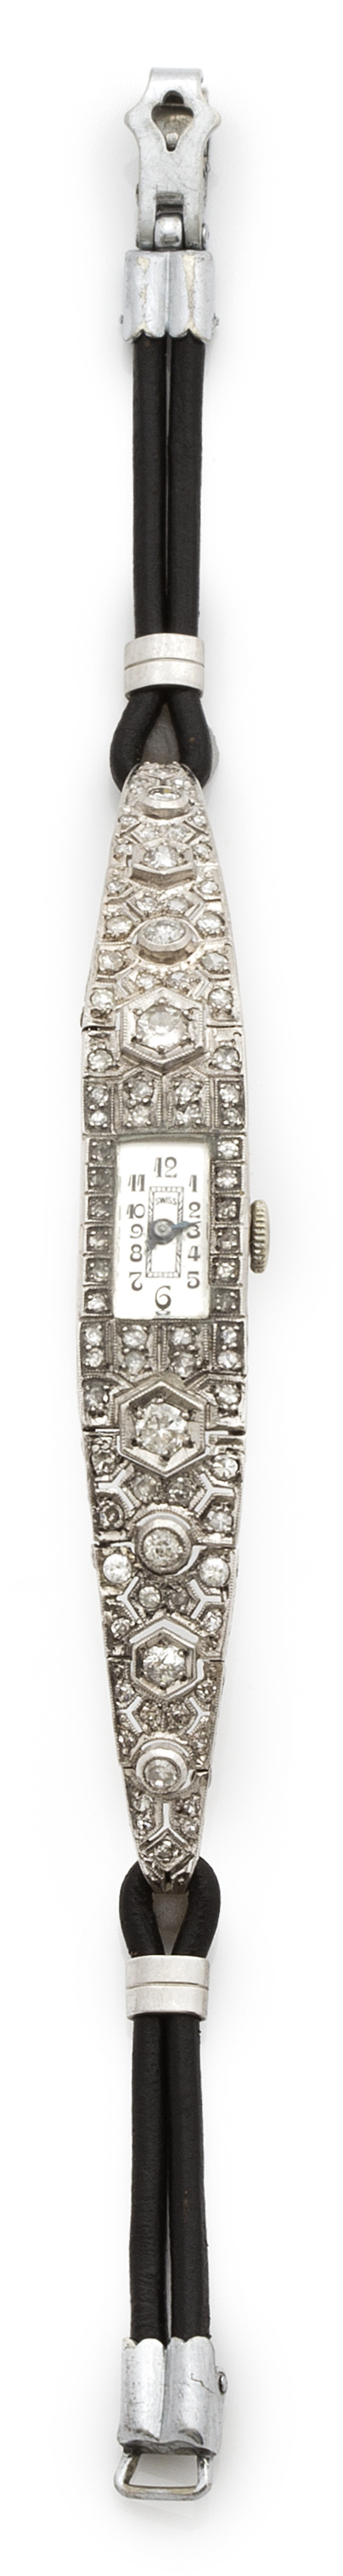 Reloj Art-Decó de brillantes y platino con pulsera de piel.